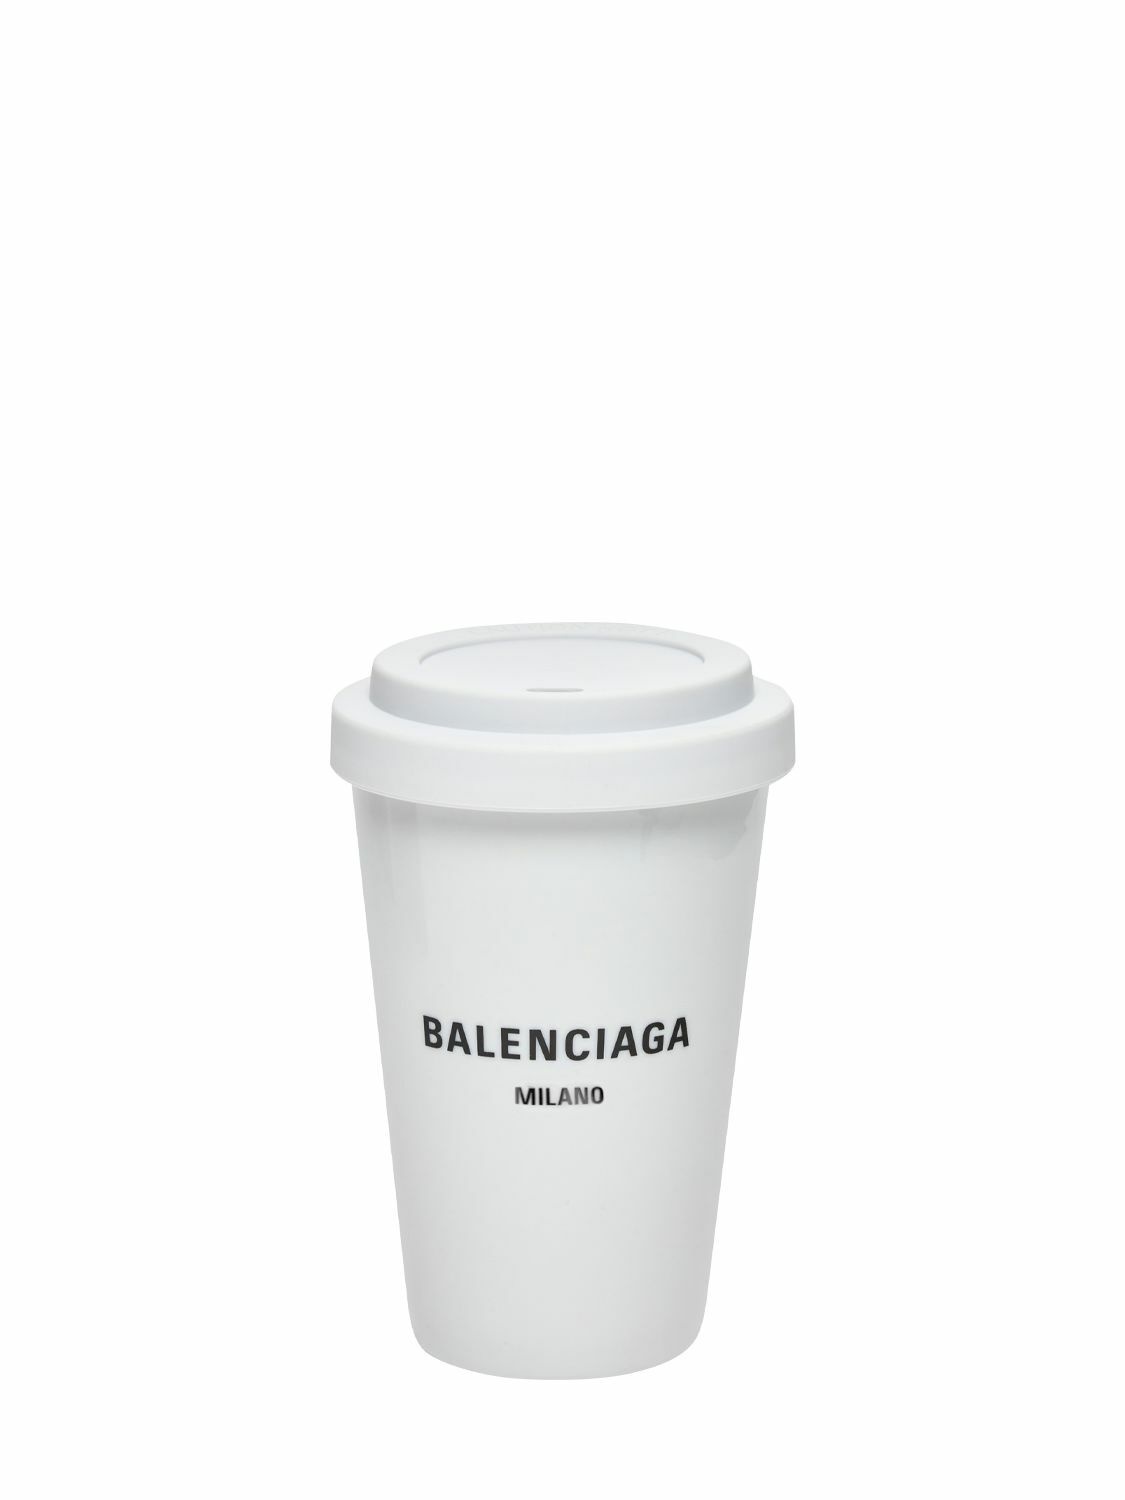 Photo: BALENCIAGA - Milan Porcelain Coffee Cup